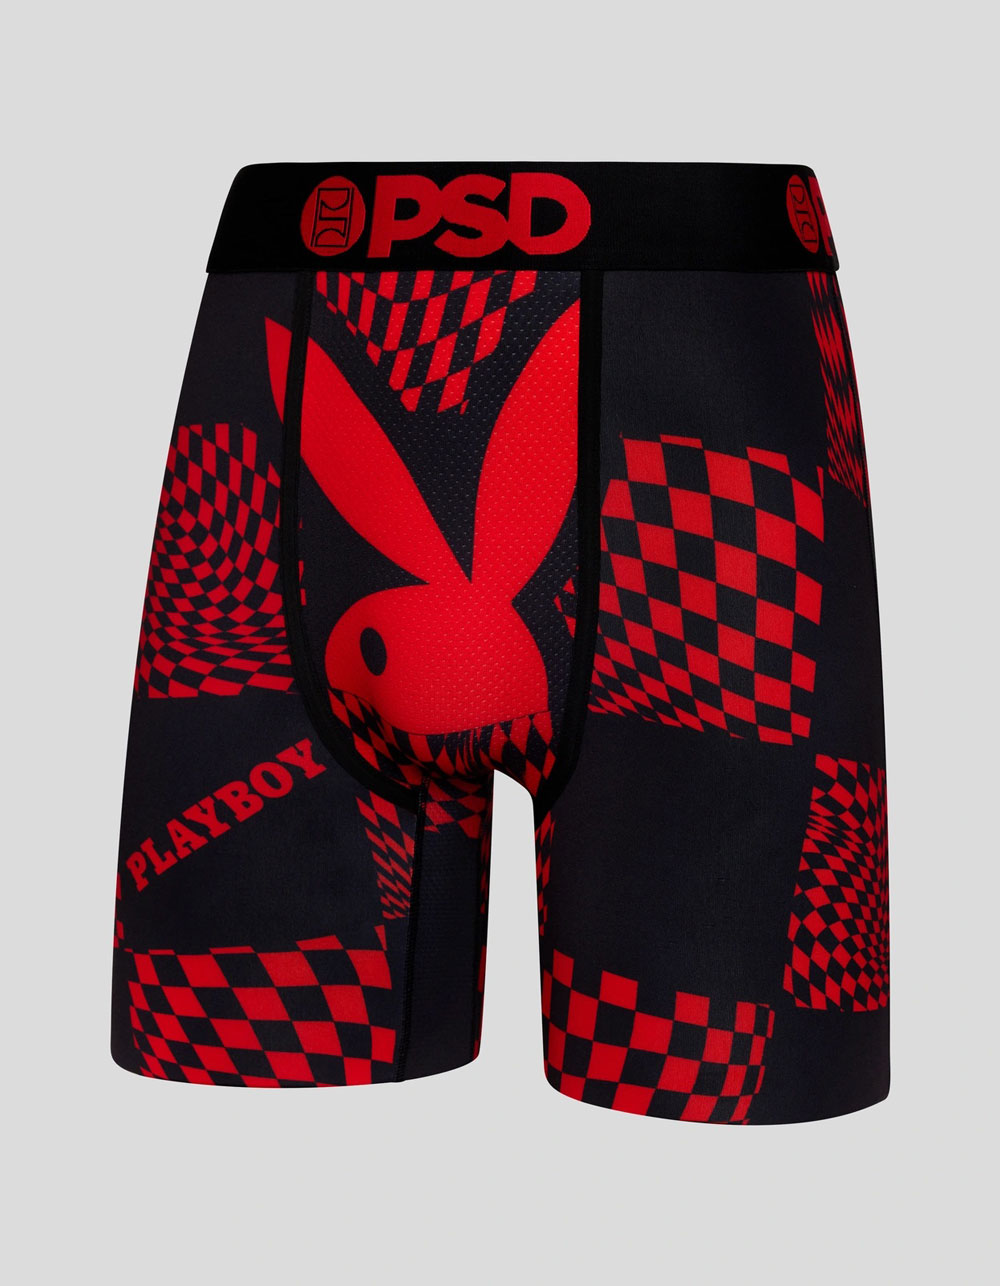 DC - FLASH Boxer Briefs - PSD Underwear